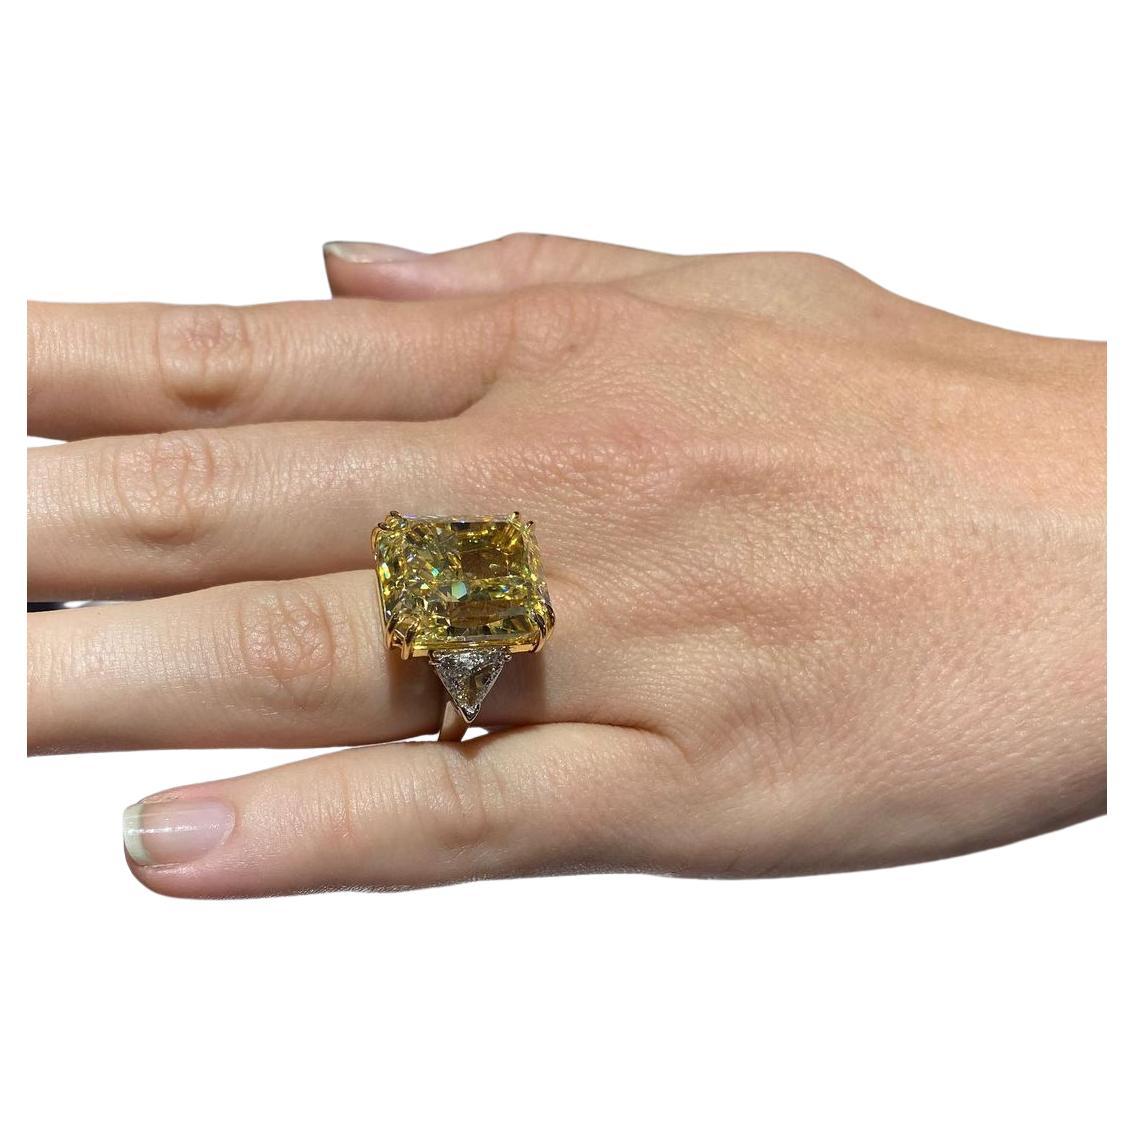 Ein exquisiter gelber Diamantring mit 7 Karat im Brillantschliff, besetzt mit zwei spitz zulaufenden Baguette-Diamanten. VS2 Klarheit

